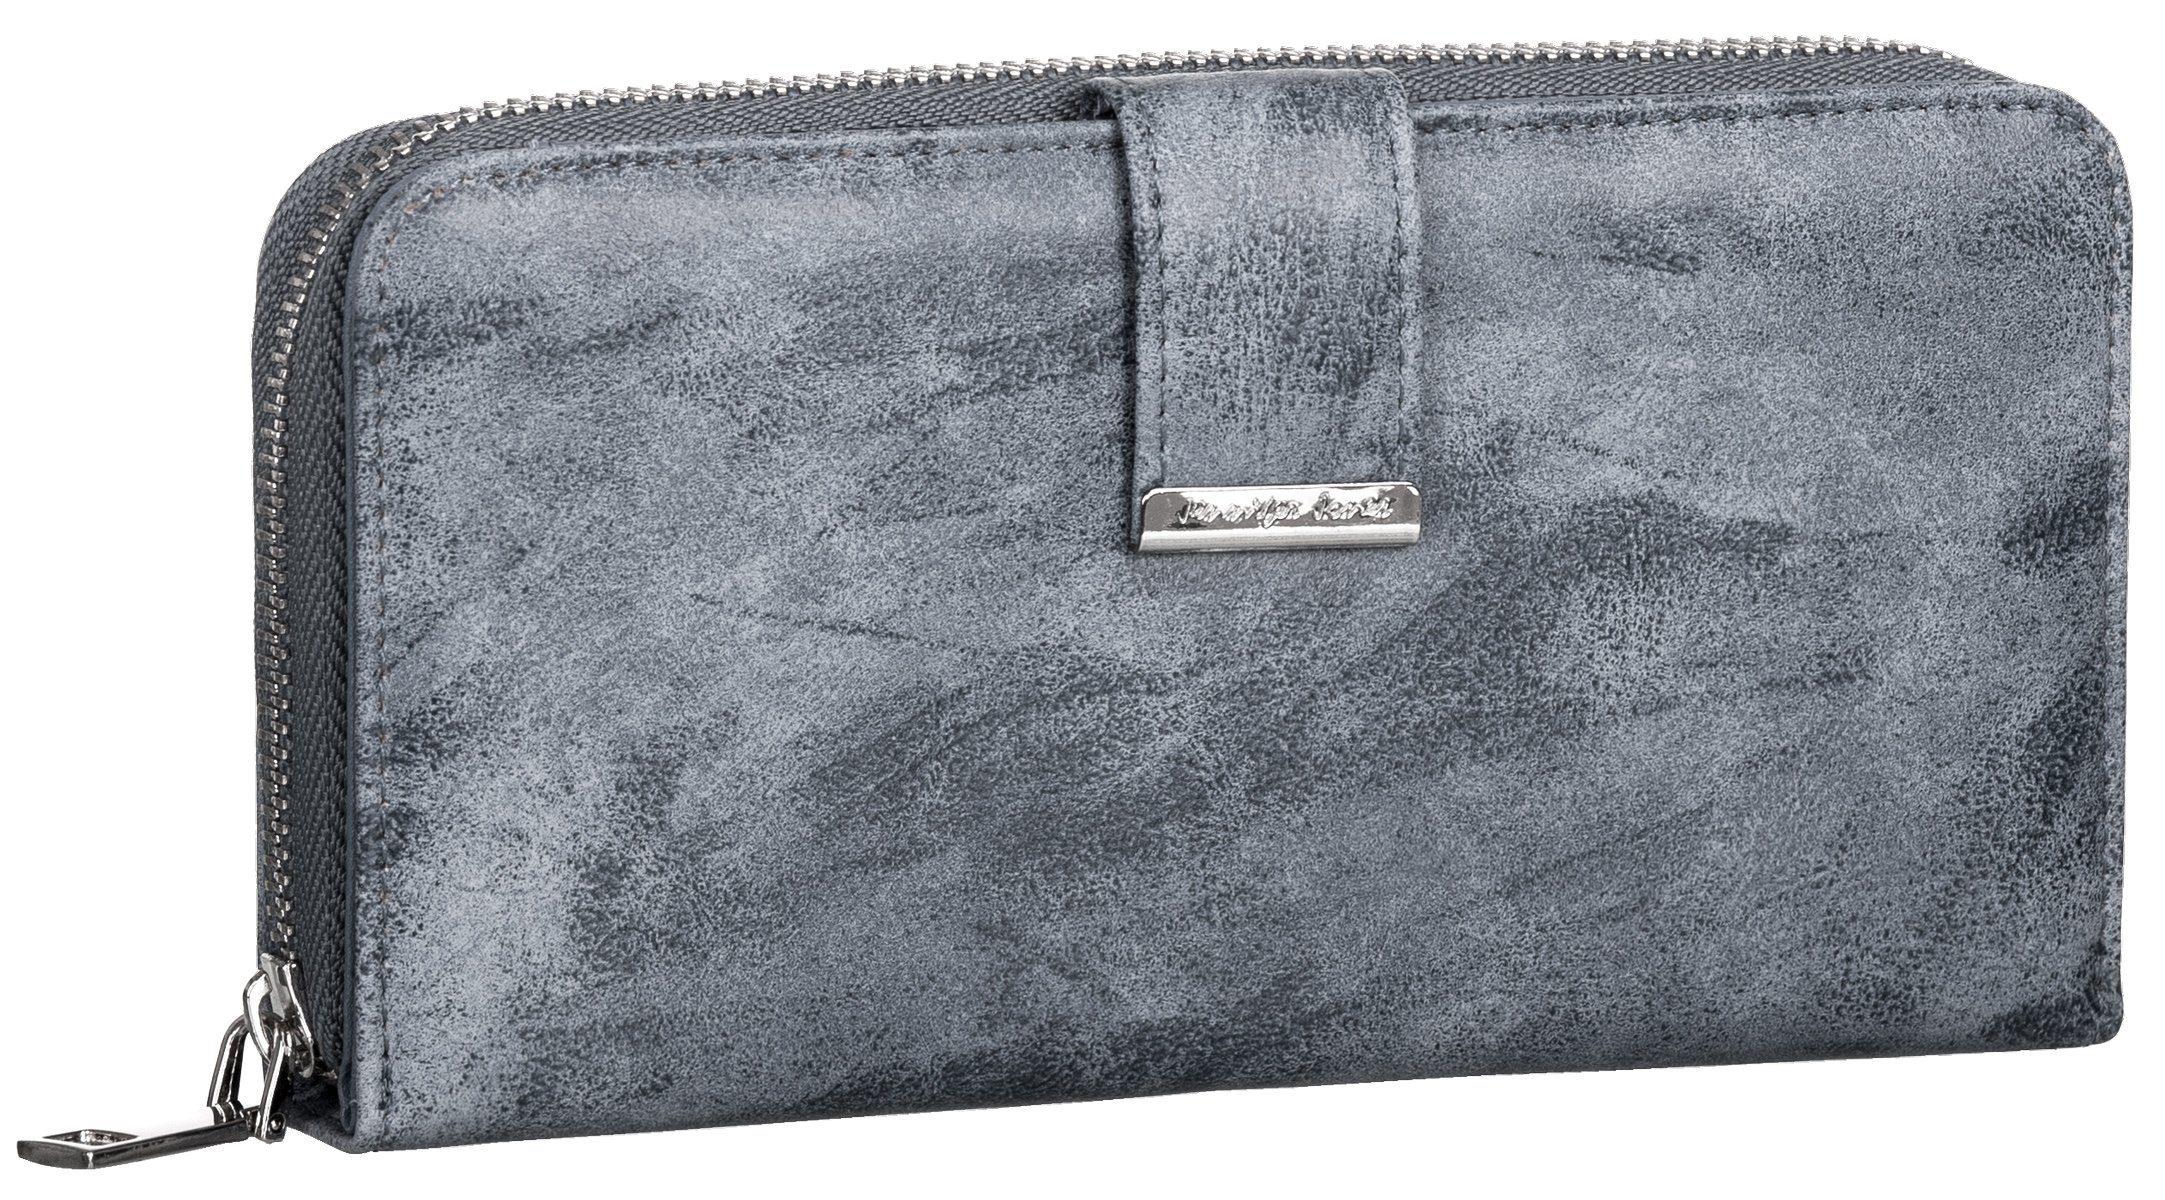 Jennifer Jones Geldbörse, Damen Geldbörse klappbar mit Reißverschluss Portemonnaie Geldbeutel grau